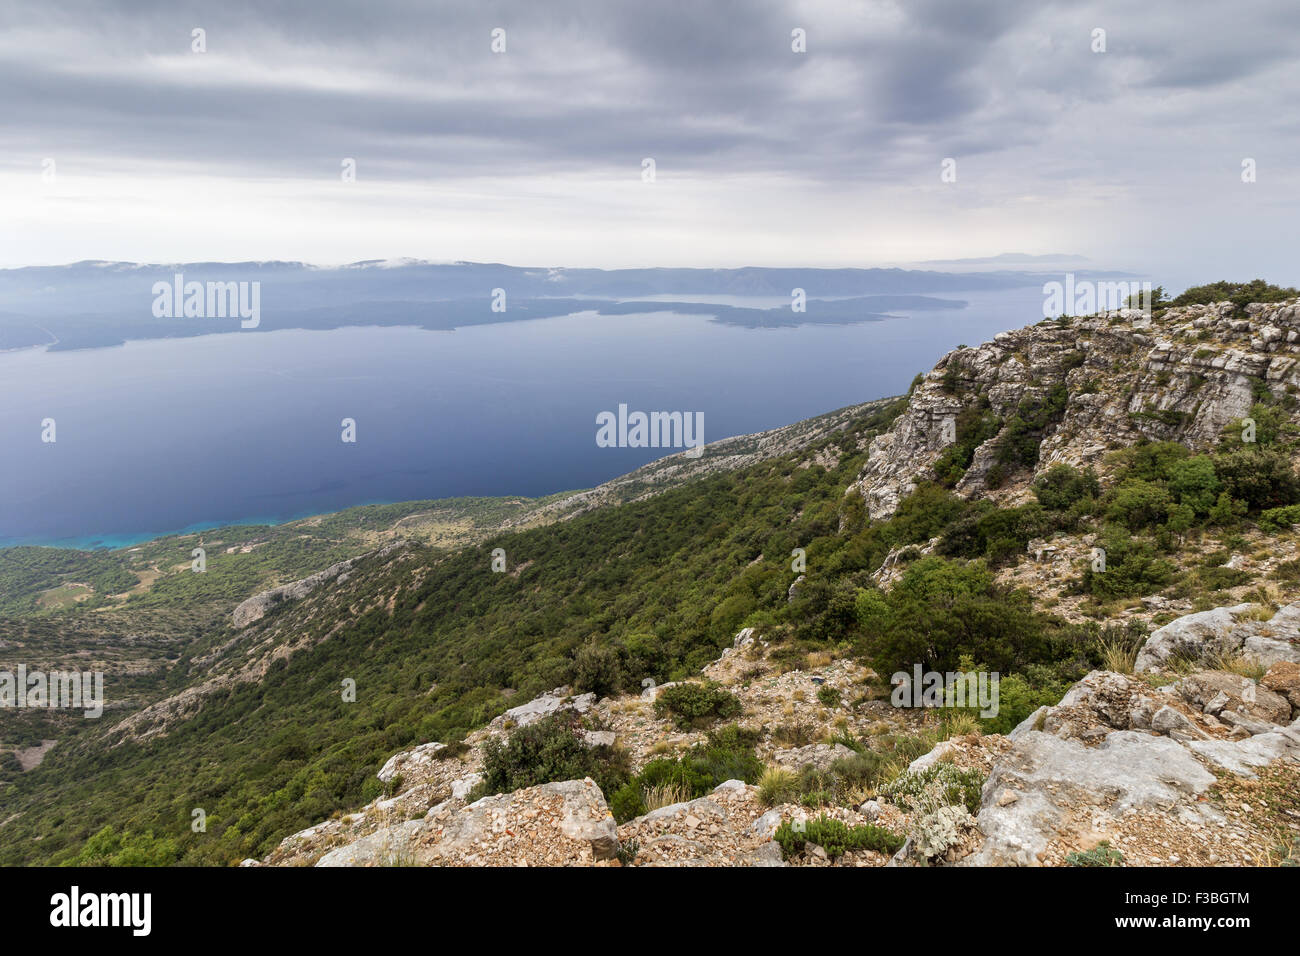 Vista panoramica dalla cima di Vidova Gora montagna all'Isola di Brac verso l'isola di Hvar in Croazia. Foto Stock